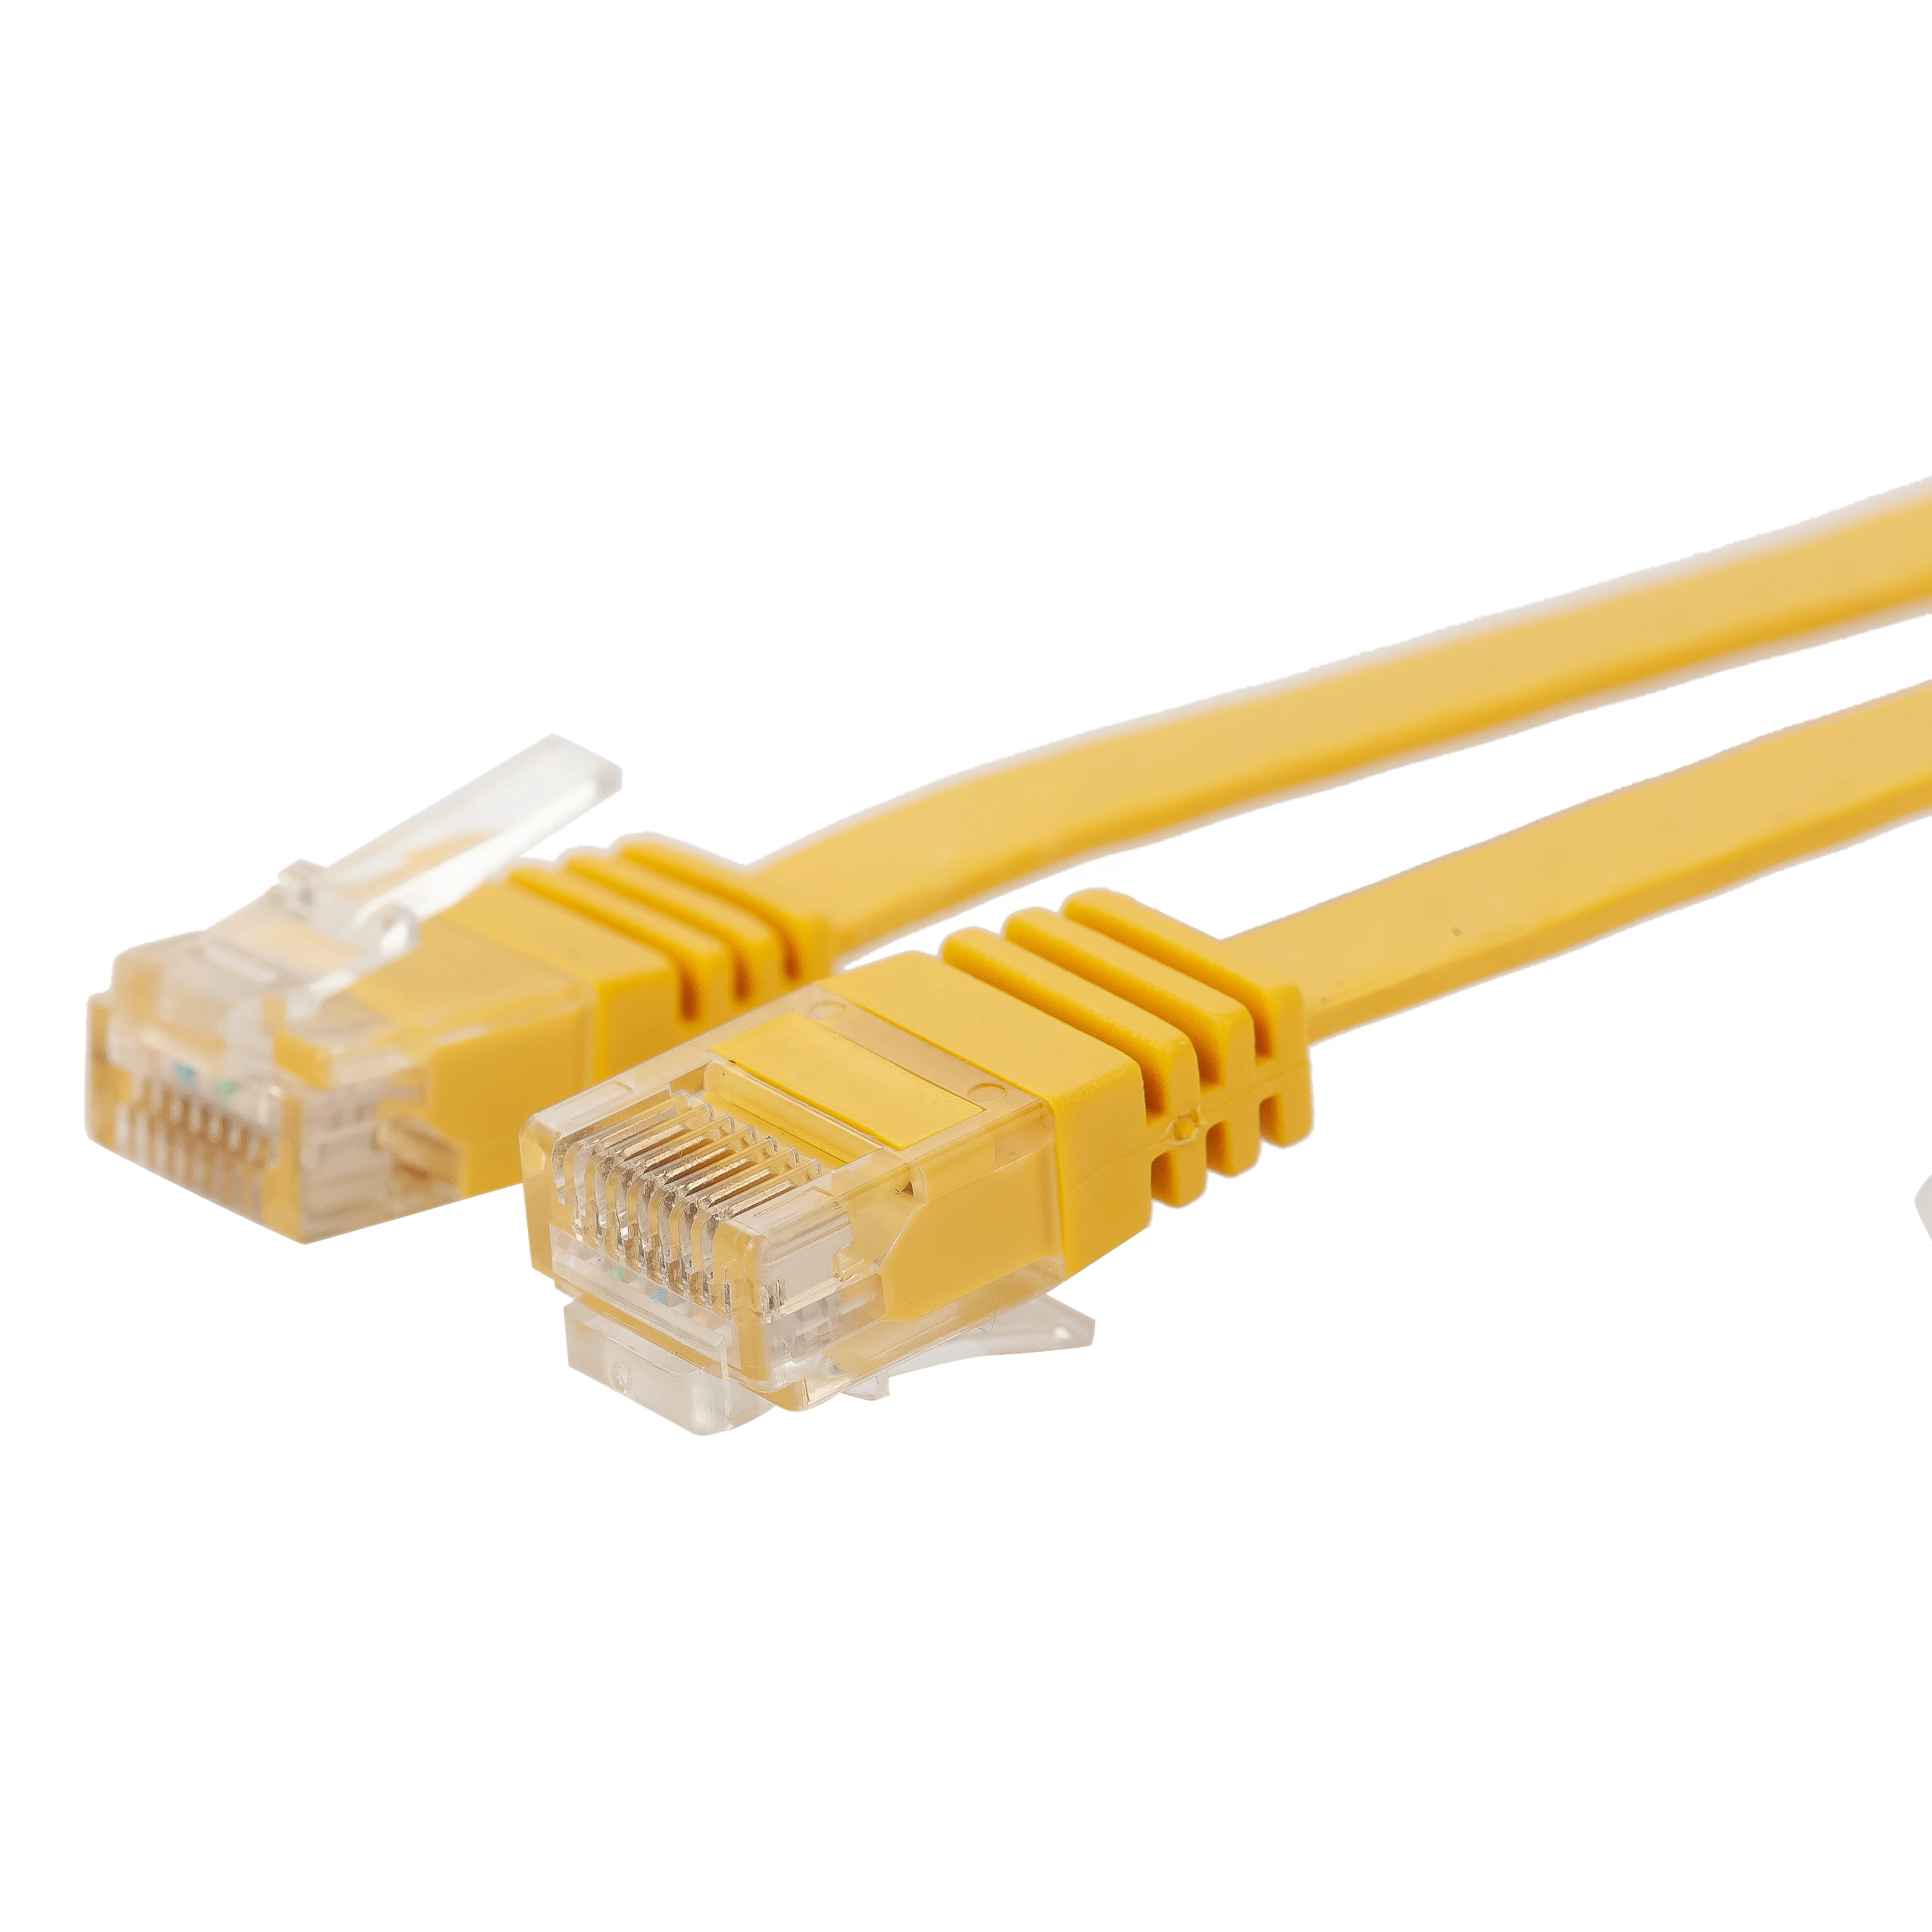 

Кабель Ethernet Cat 6, 10 шт. в упаковке, 30 см, плоский, желтый/белый, высокоскоростной, RJ45, Lan провод для маршрутизатора, модема, PS, Xbox